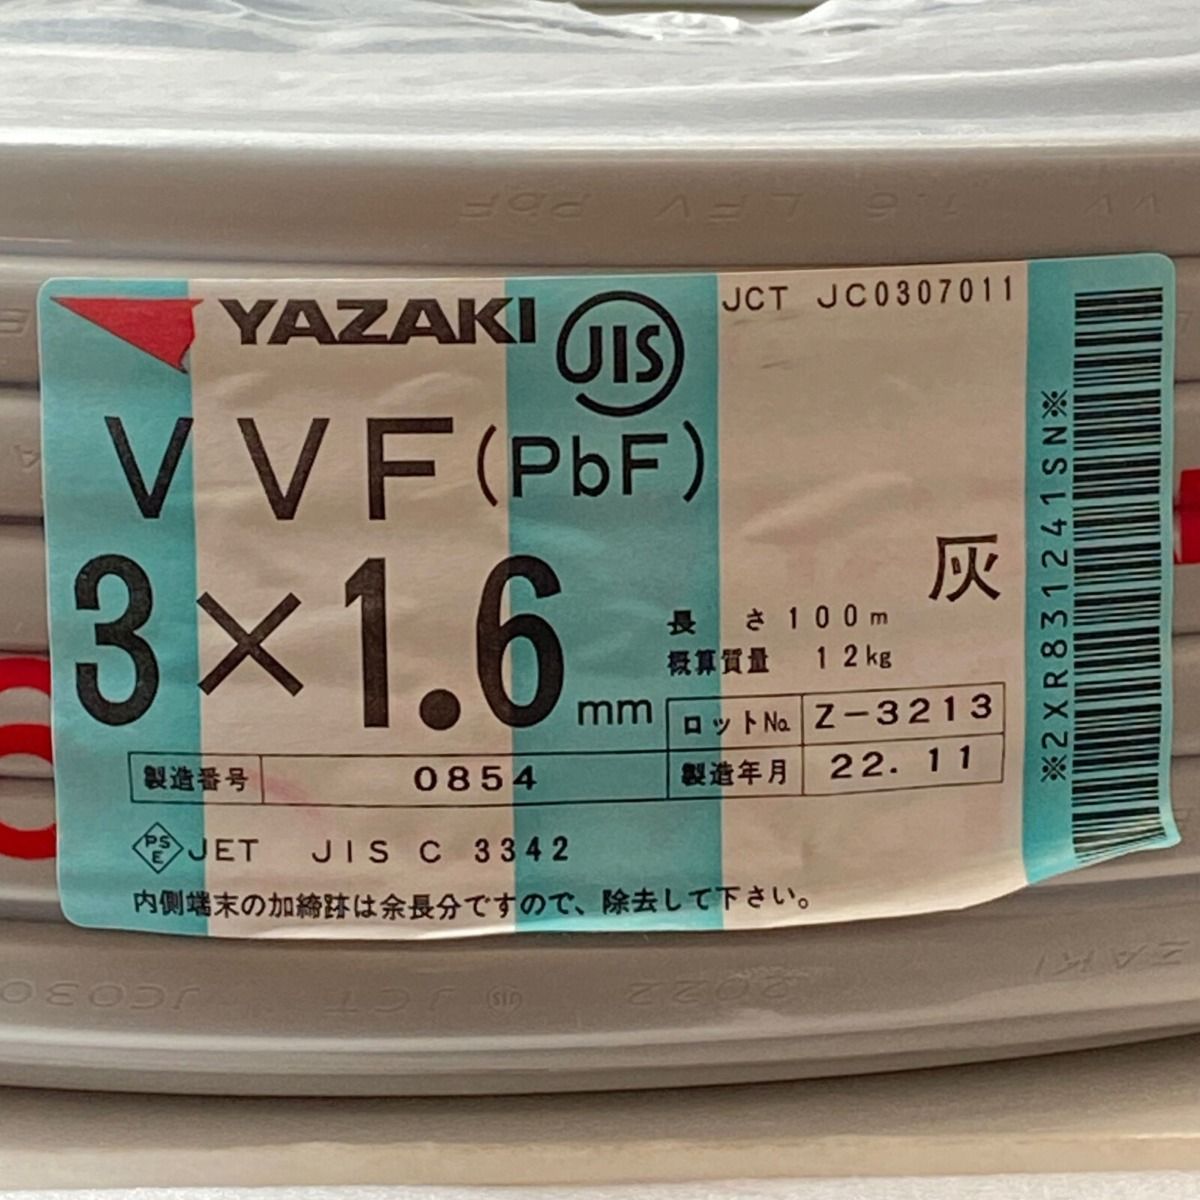 ΦΦYAZAKI VVFケーブル 平形 100m巻 灰色 VVF3×1.6 3芯 0854 - なんでも